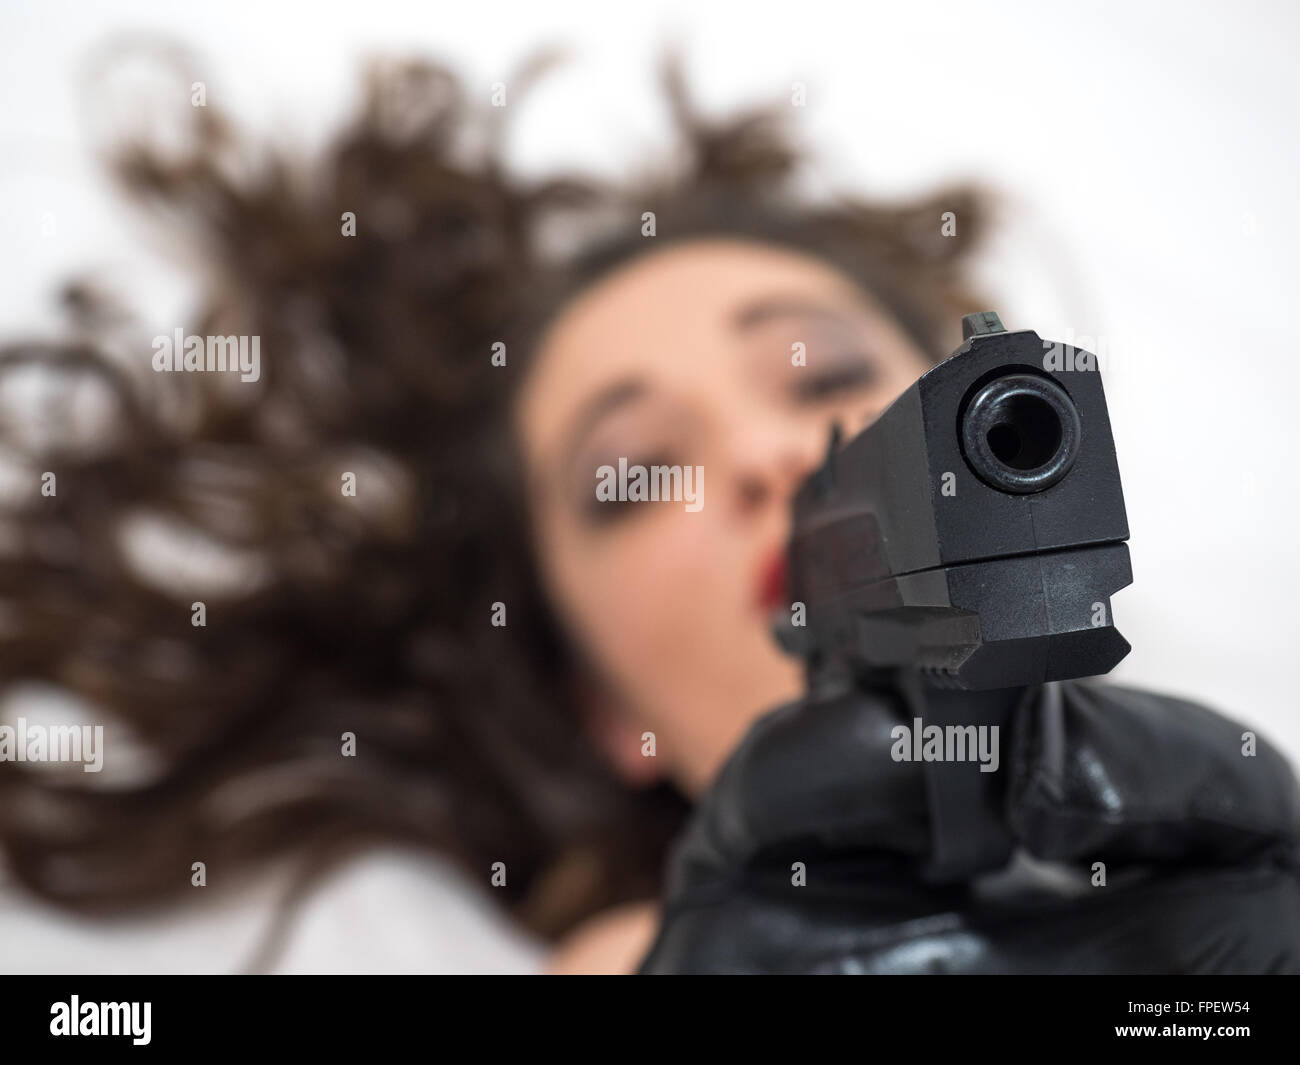 Ragazza distesa indicando una pistola, focus sulla pistola Foto Stock